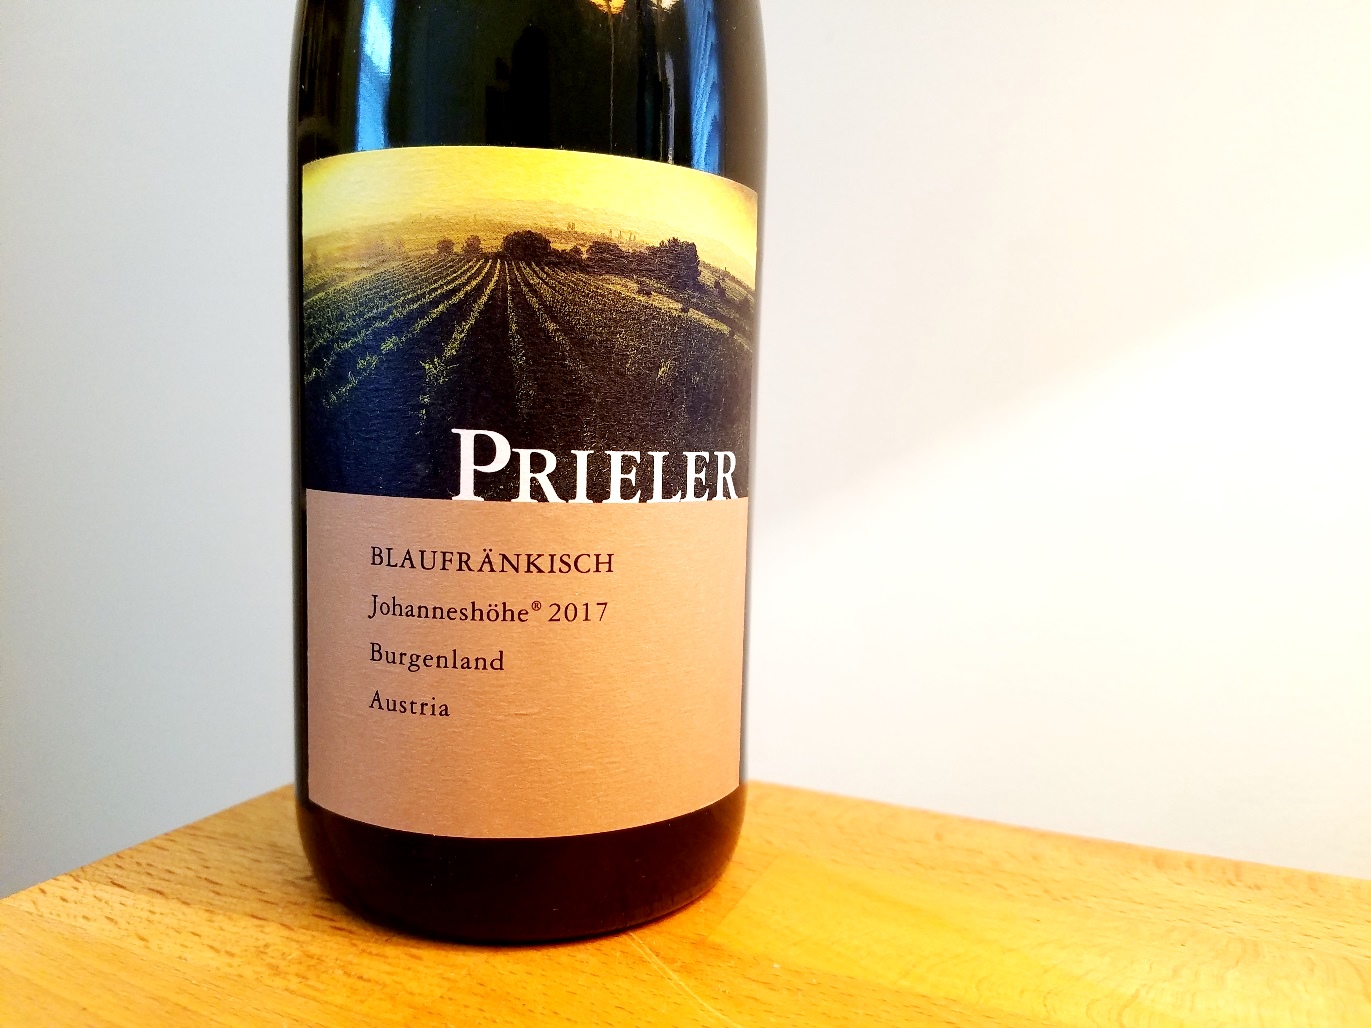 Prieler, Johanneshöhe Blaufränkisch 2017, Burgenland, Austria, Wine Casual